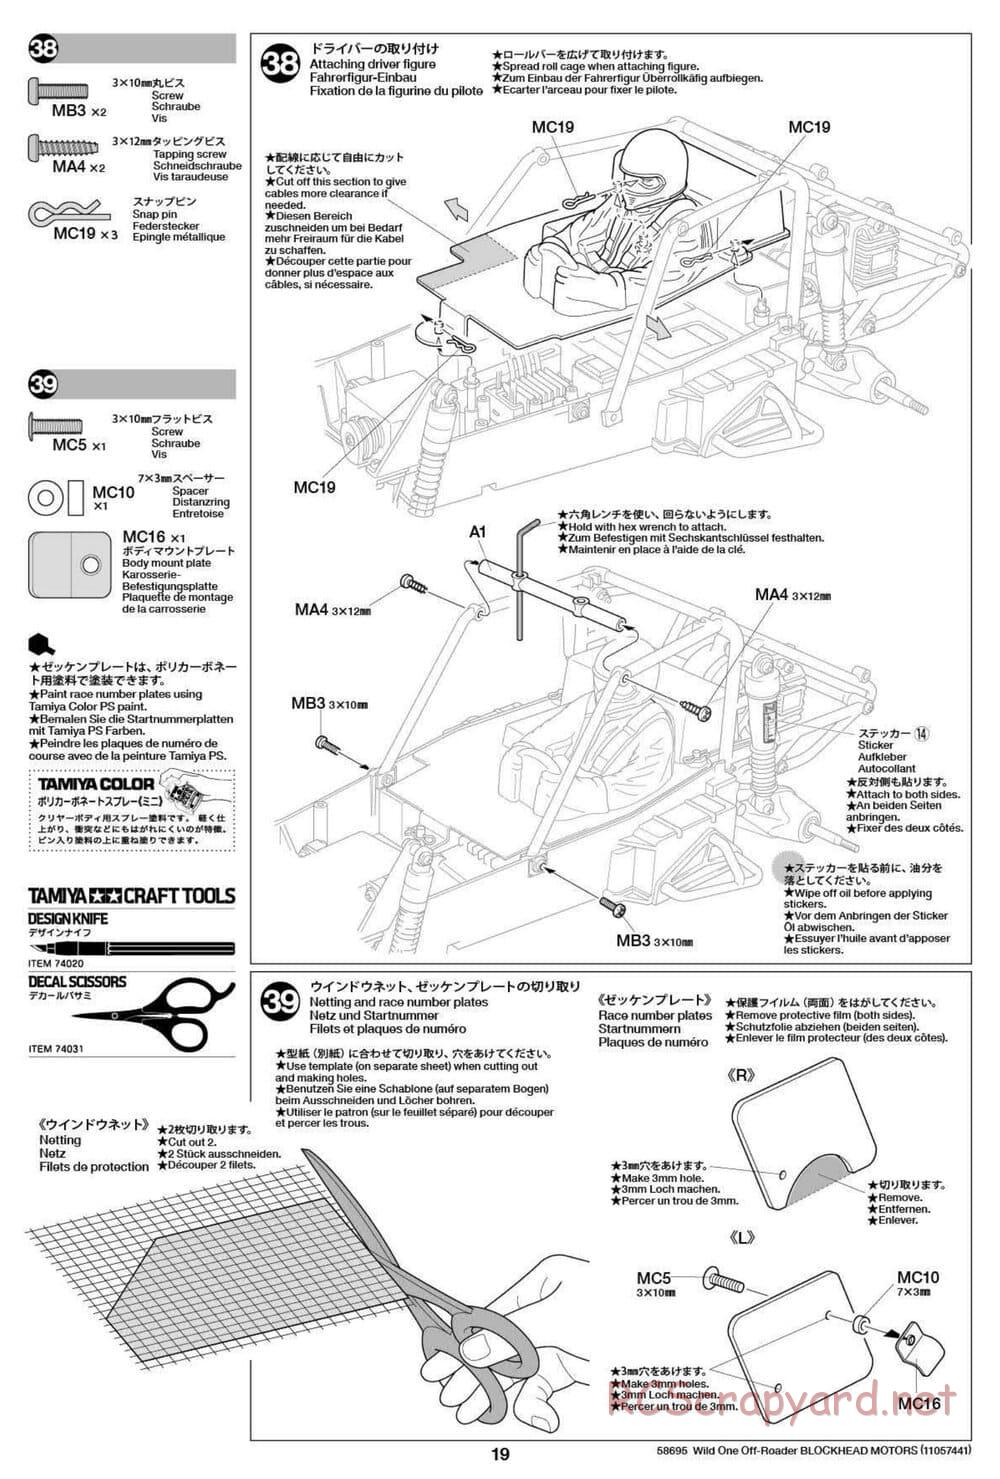 Tamiya - Wild One Off Roader Blockhead Motors - FAV Chassis - Manual - Page 19